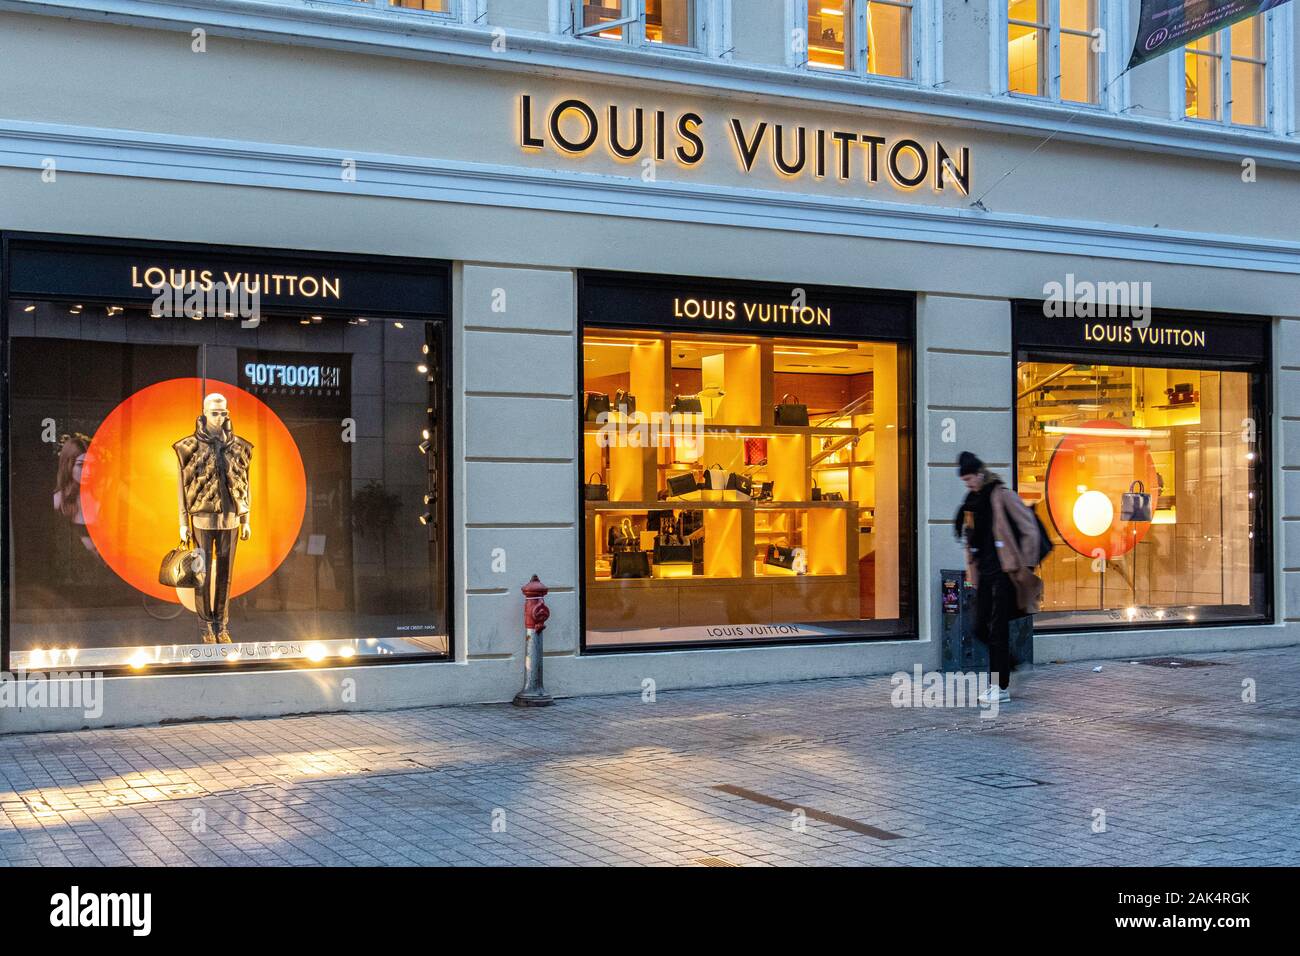 Almacén de Louis Vuitton. Tienda de venta de lujo, bolsas de